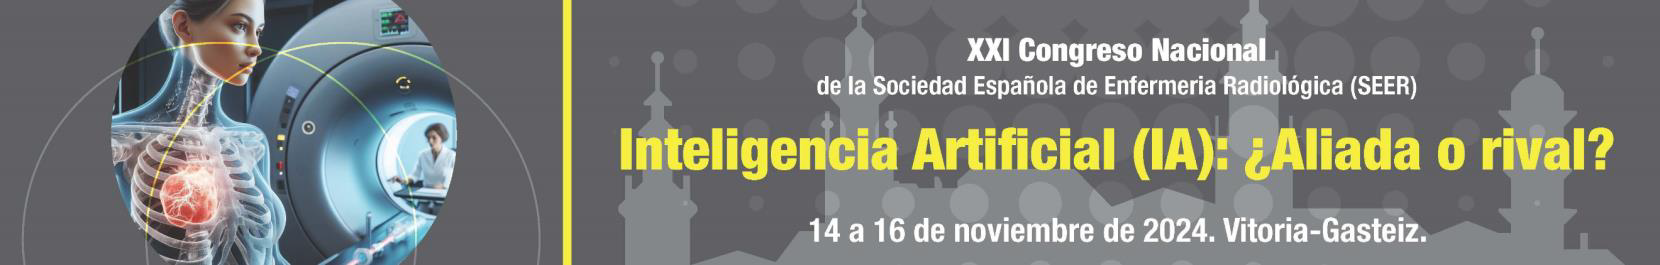 XXI Congreso Nacional de la Sociedad Española de Enfermeria Radiologica SEER